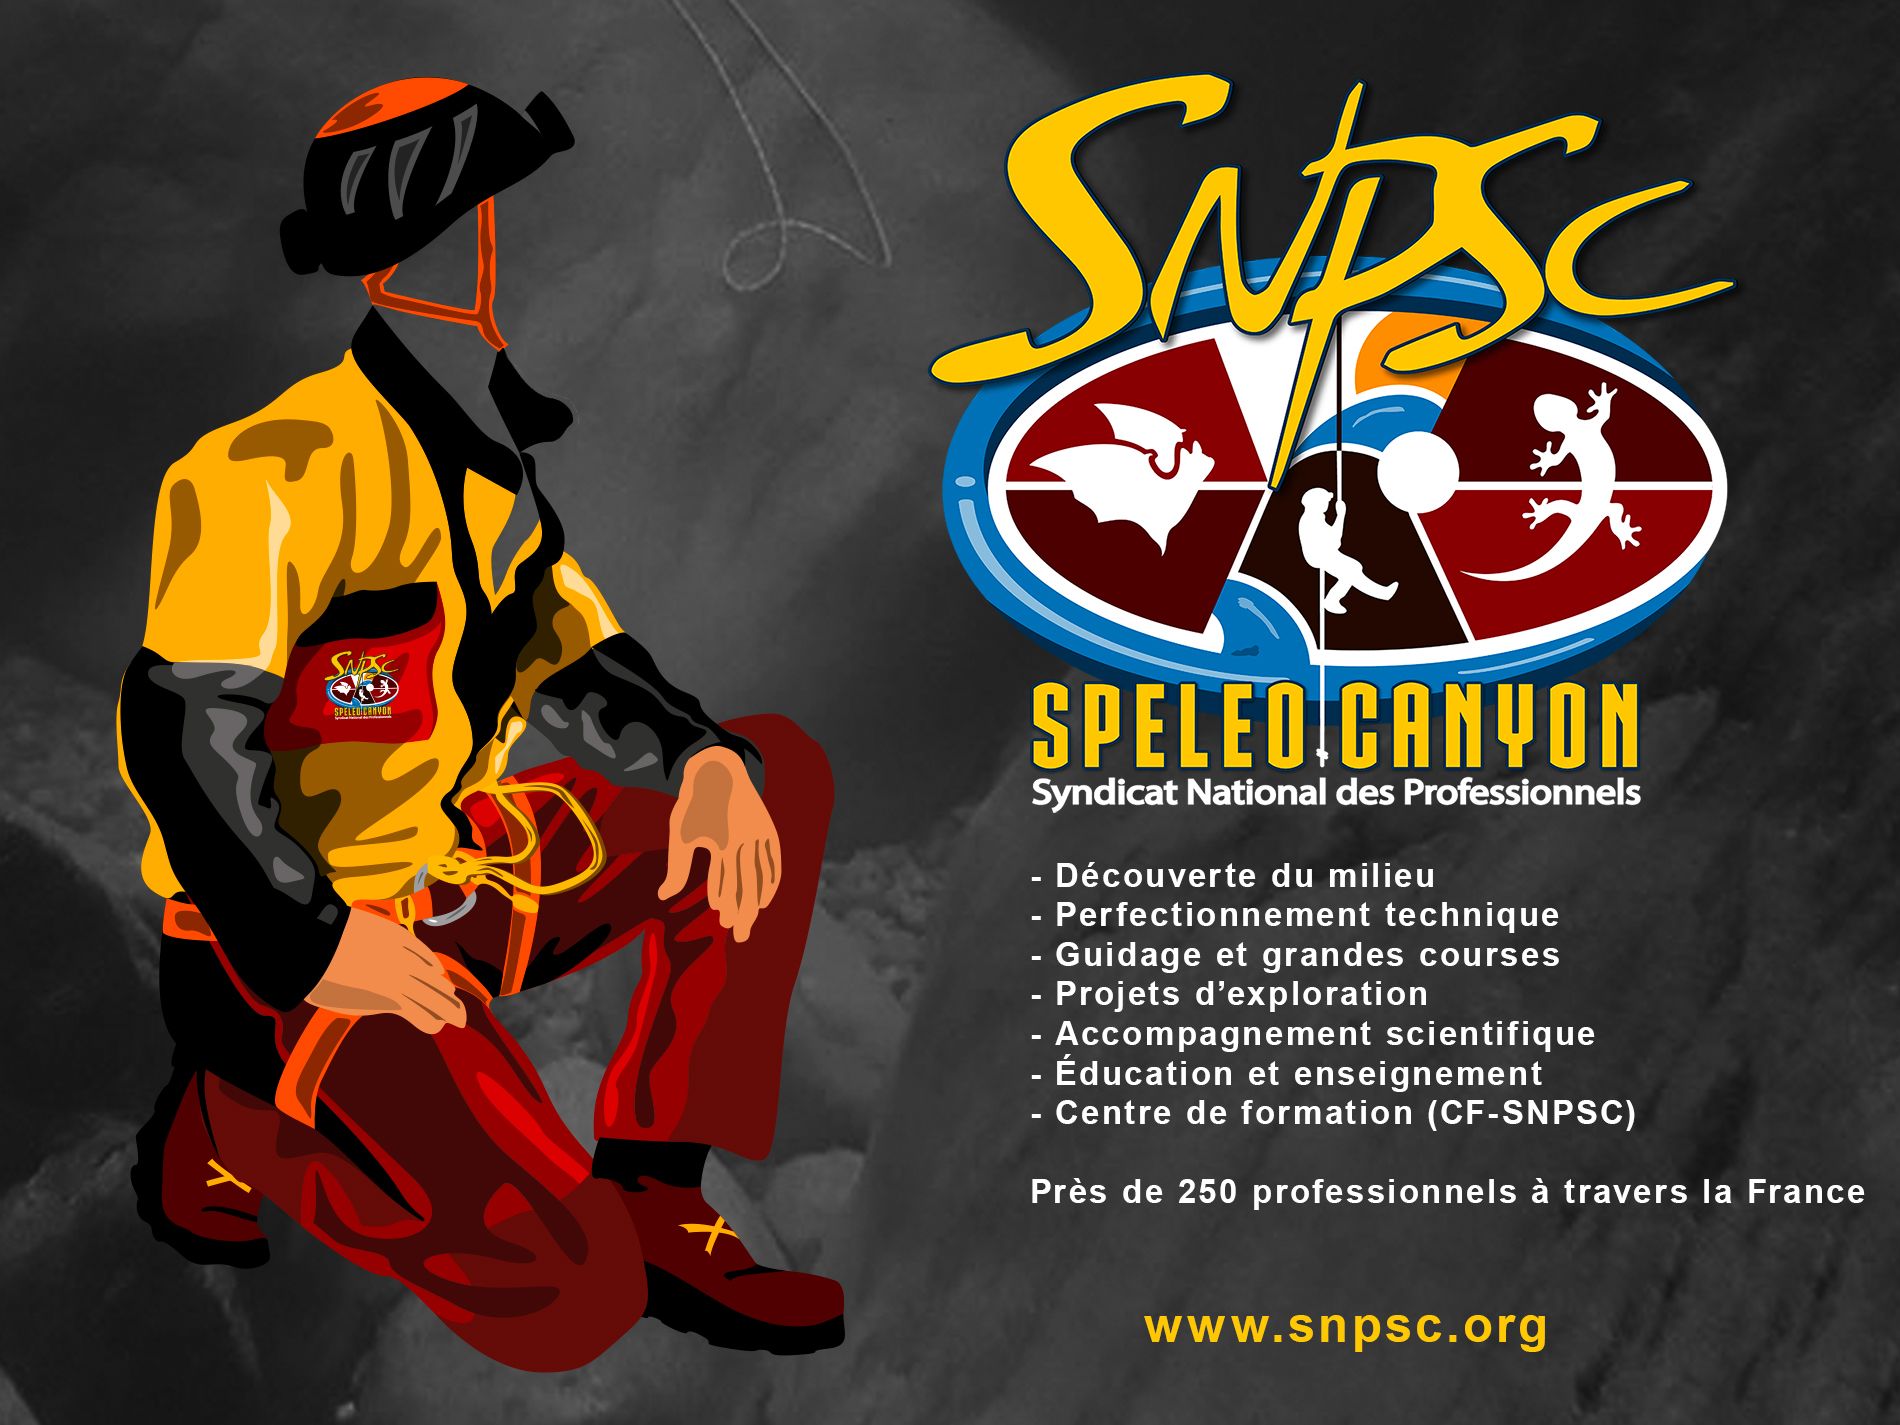 Guide/Moniteur professionnel de spéléologie SNPSC syndicat spéléo-canyon